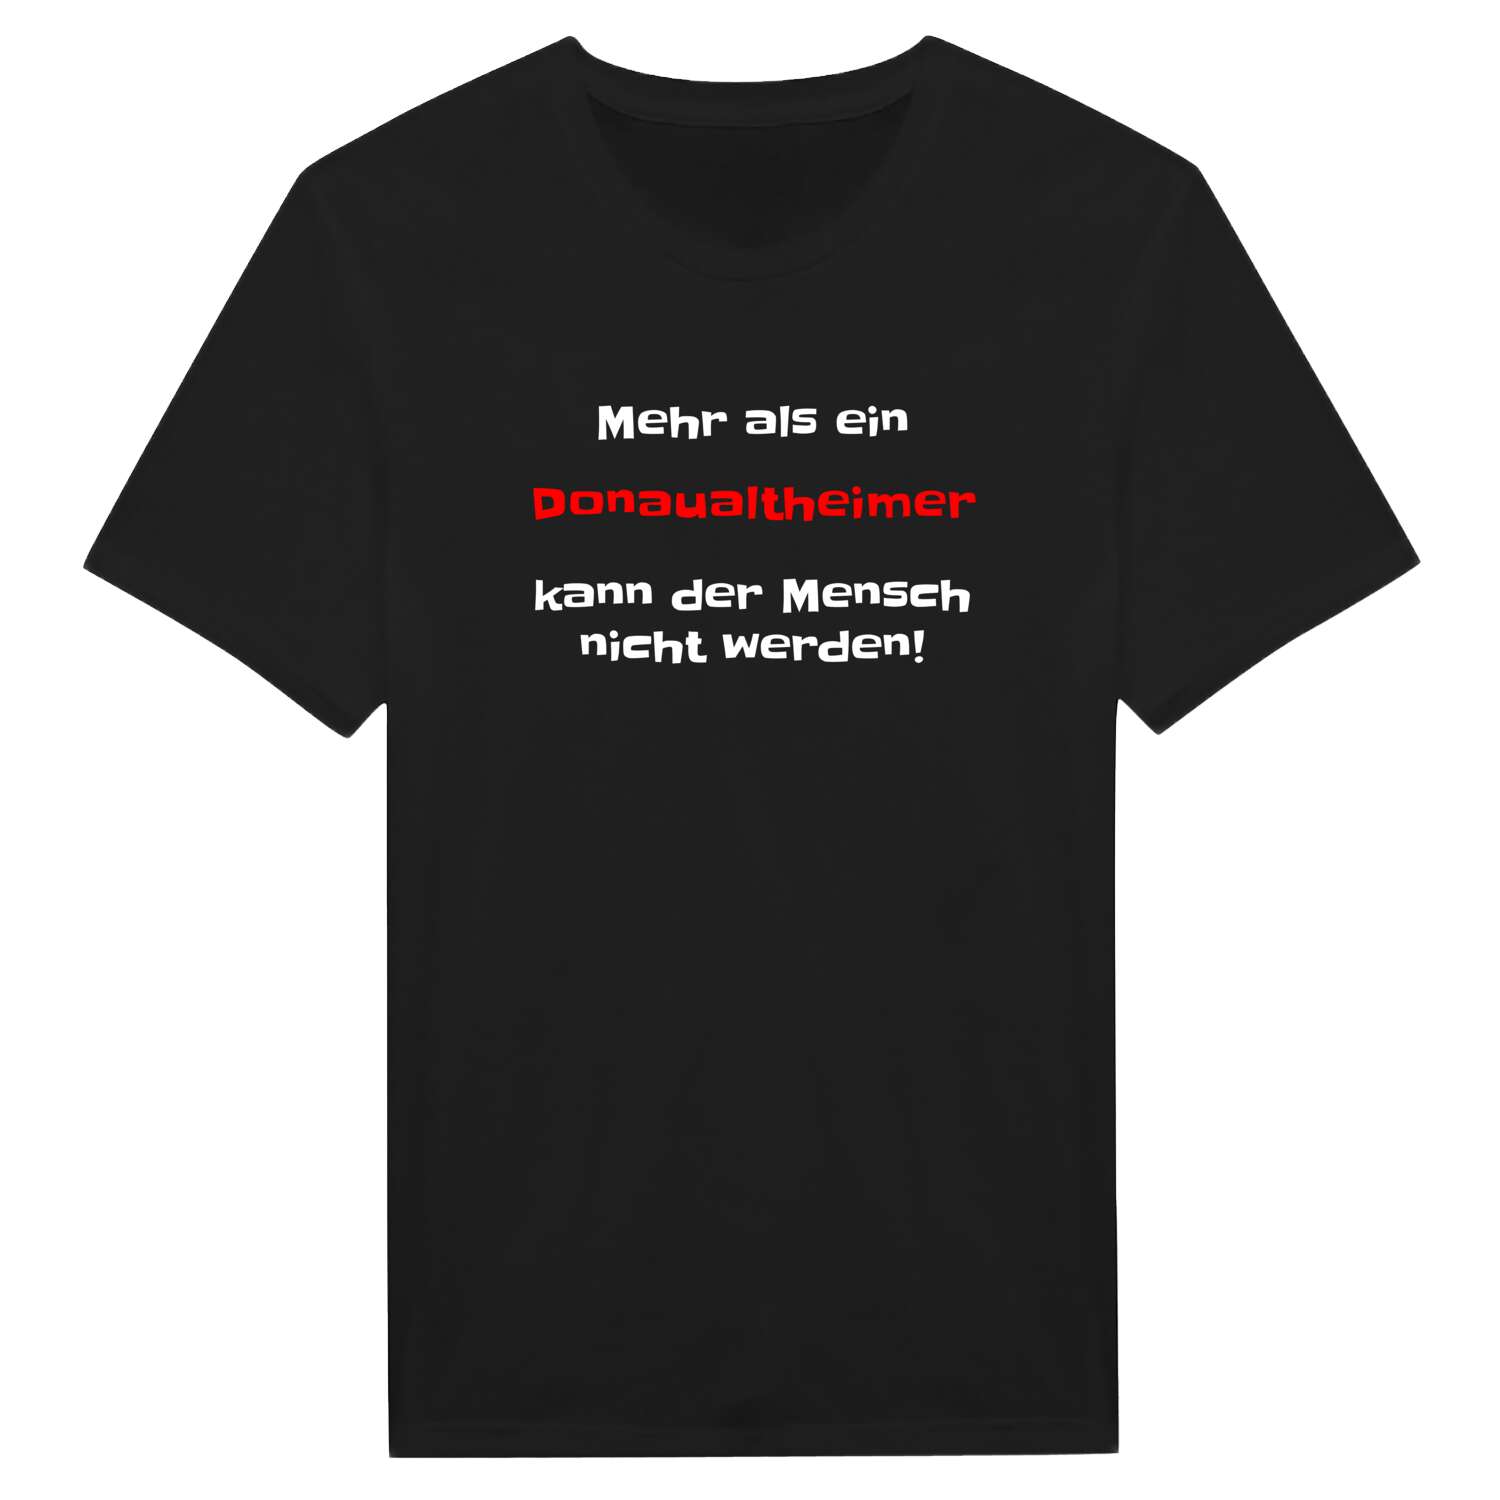 Donaualtheim T-Shirt »Mehr als ein«